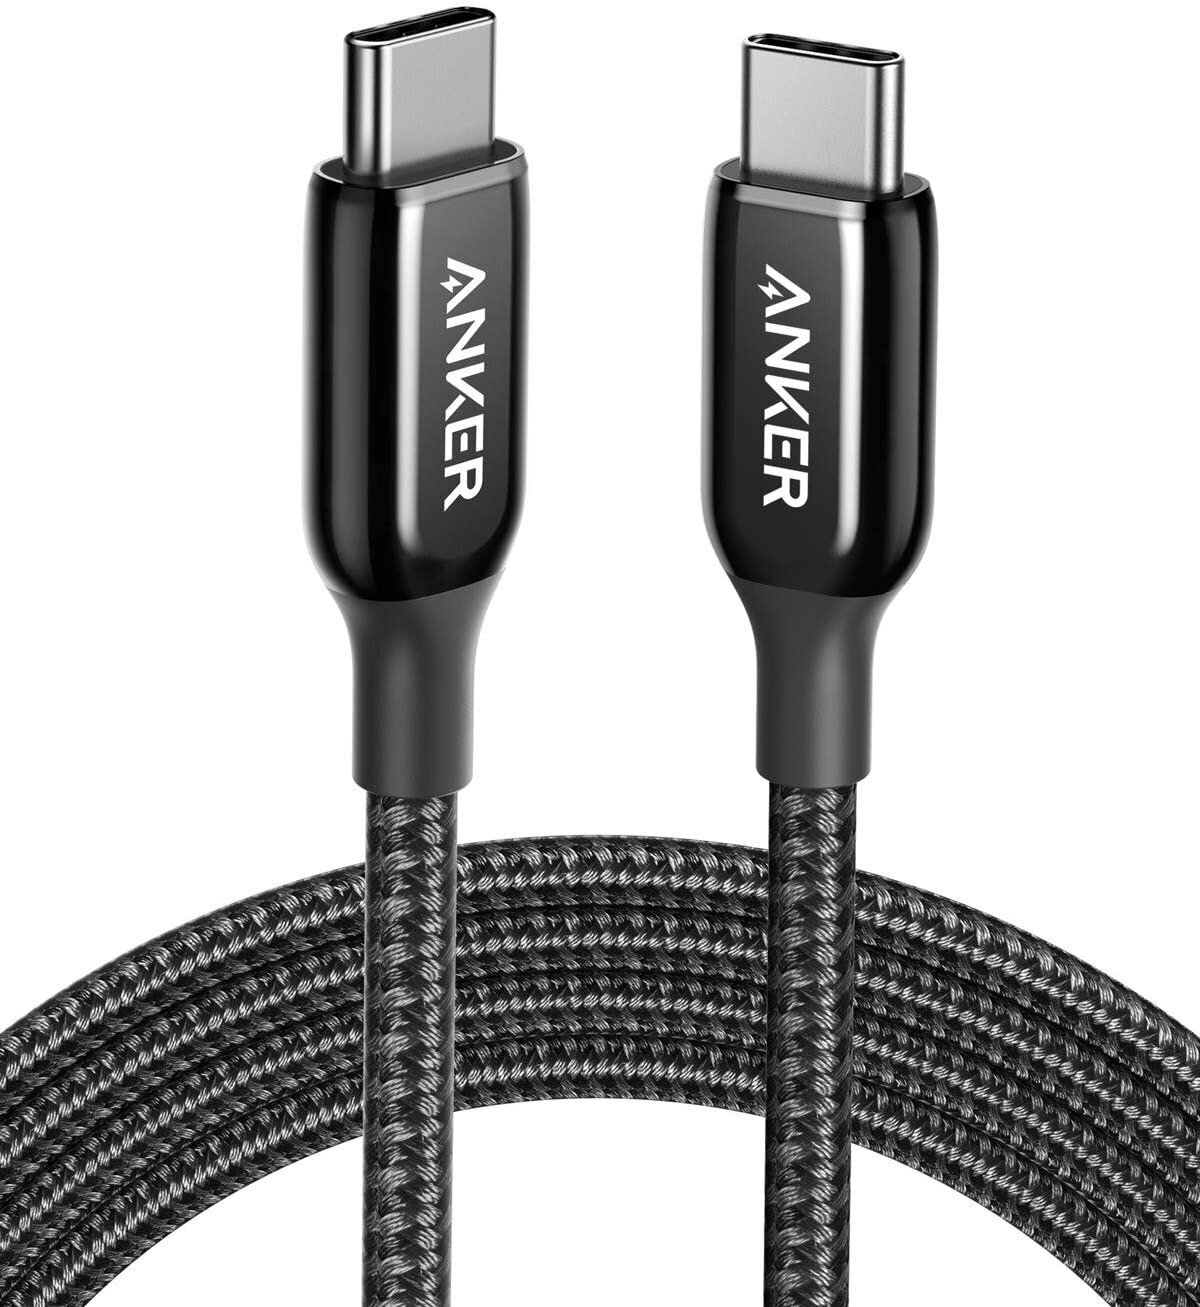 Anker Cable 310 USB-C to USB-C [6 ft. PVC] Black-A81E2011